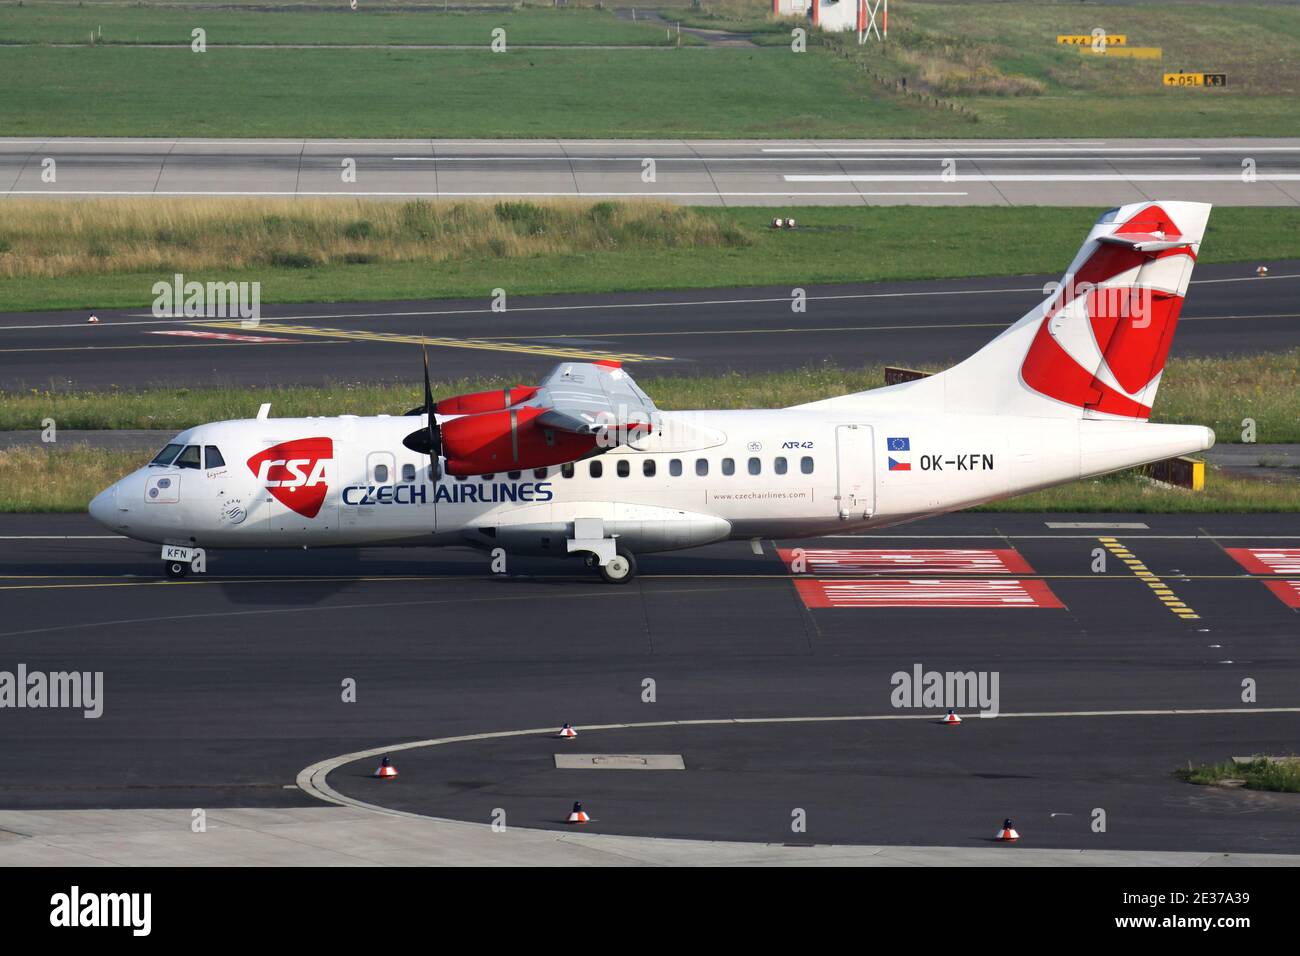 CSA Czech Airlines ATR 42 con registrazione OK-KFN sulla Taxiway all'aeroporto di Dusseldorf. Foto Stock